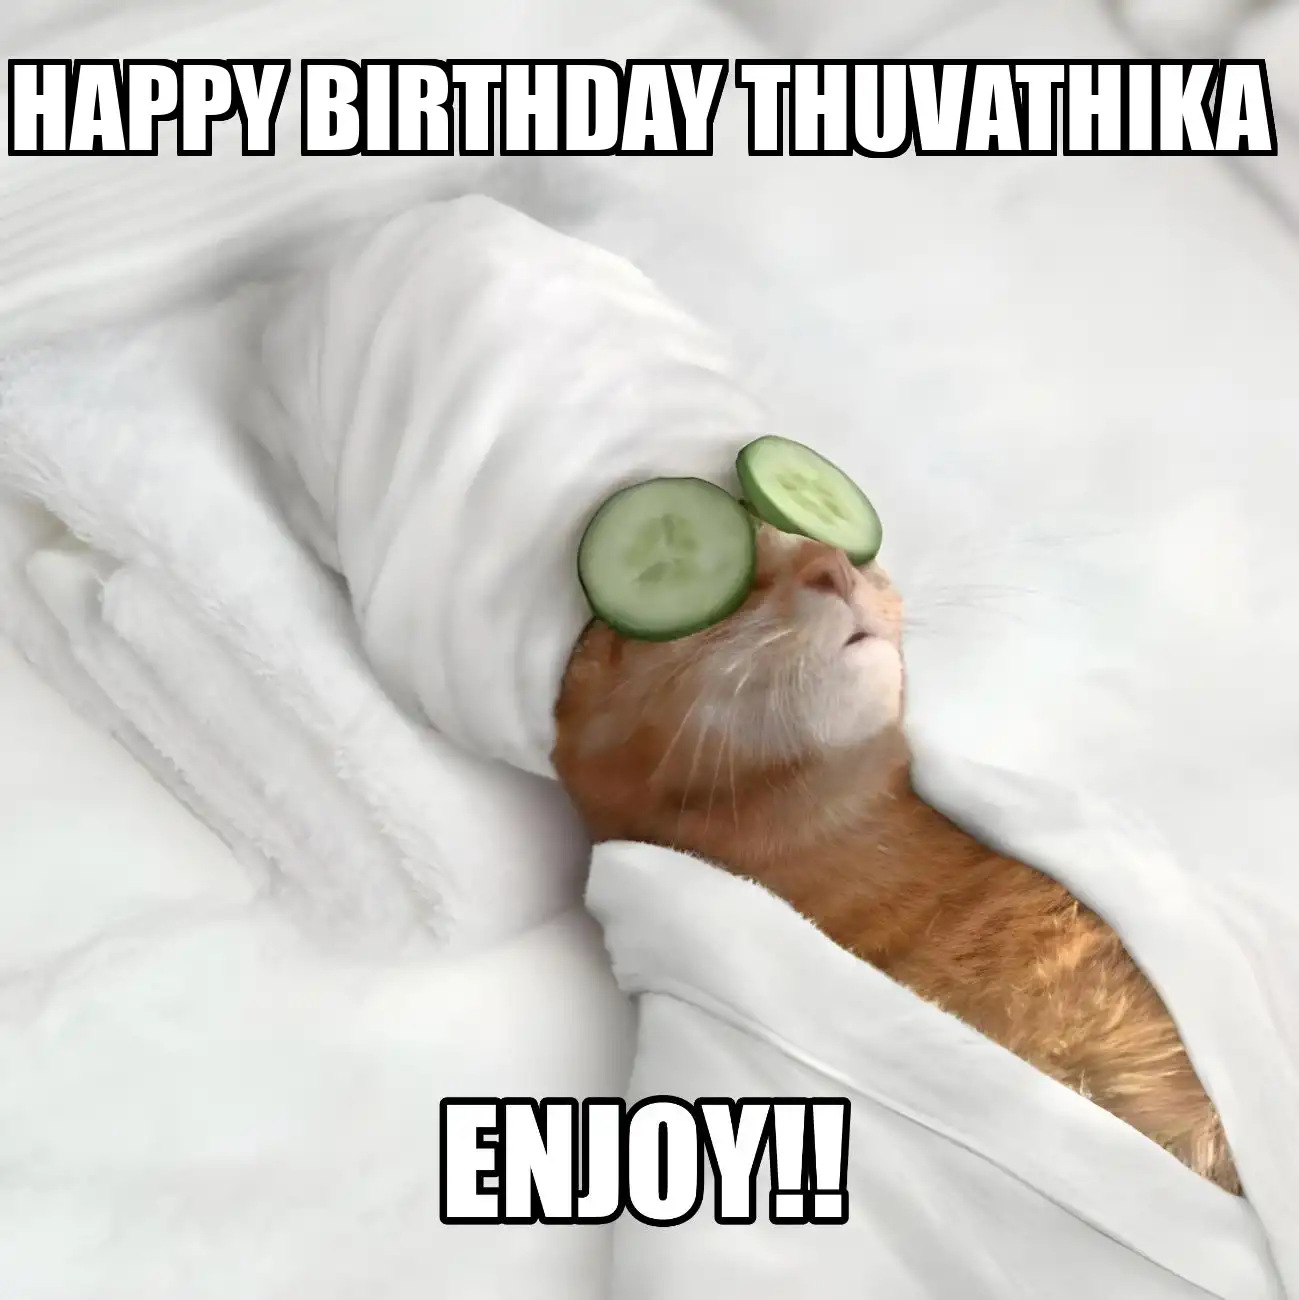 Happy Birthday Thuvathika Enjoy Cat Meme